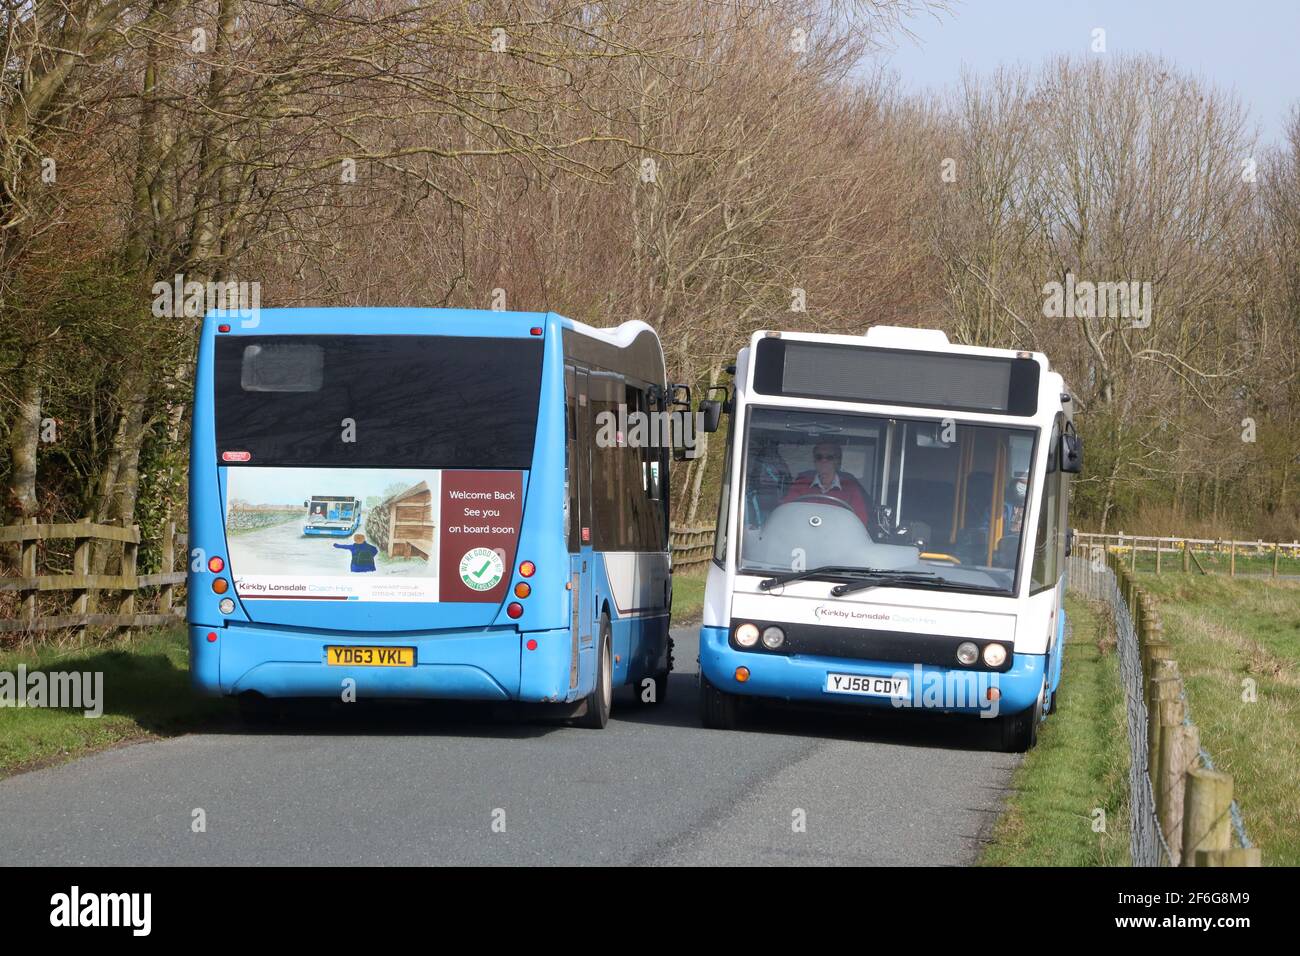 Deux autocars Kirkby Lonsdale louent des midibus qui passent sur une route rurale étroite à Pilling, dans le Lancashire, service 89 jusqu'à Knott End et Lancaster, le 31 mars 2021 Banque D'Images